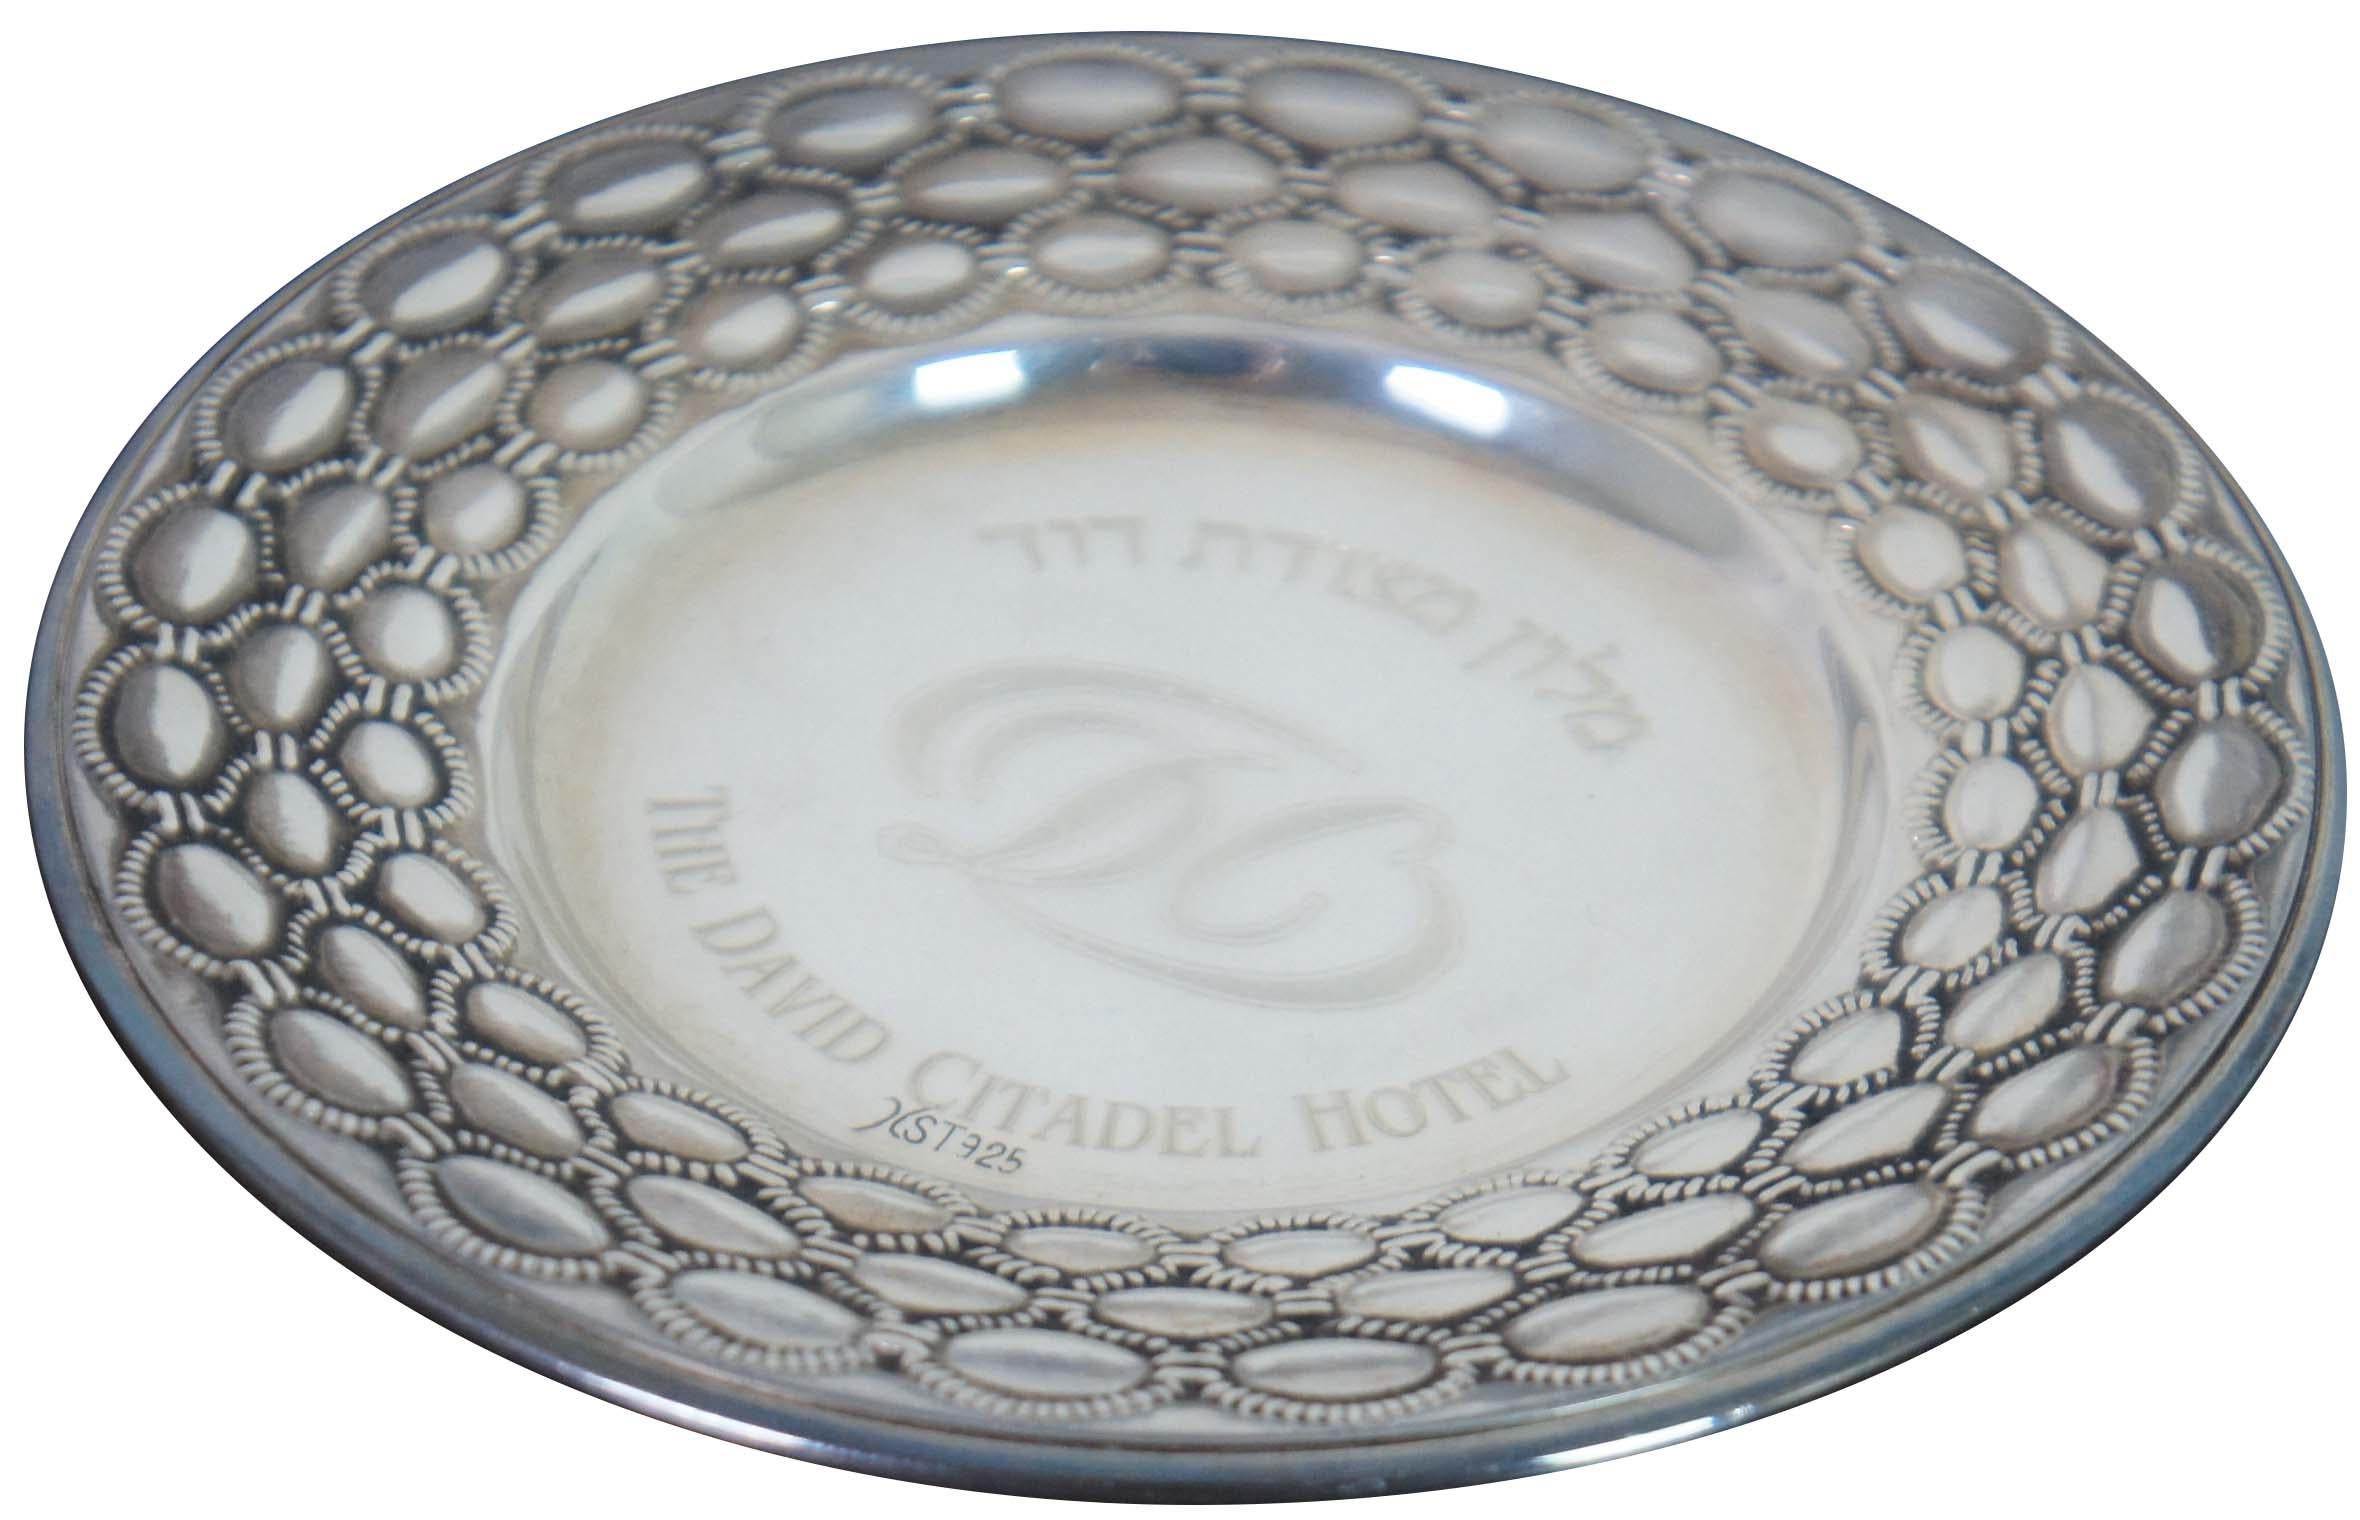 Vintage 925 Sterling Silber Schmuckschale oder kleiner Teller aus dem David Citadel Hotel in Jerusalem mit dekorativem Perlenmuster um den äußeren Rand.

4